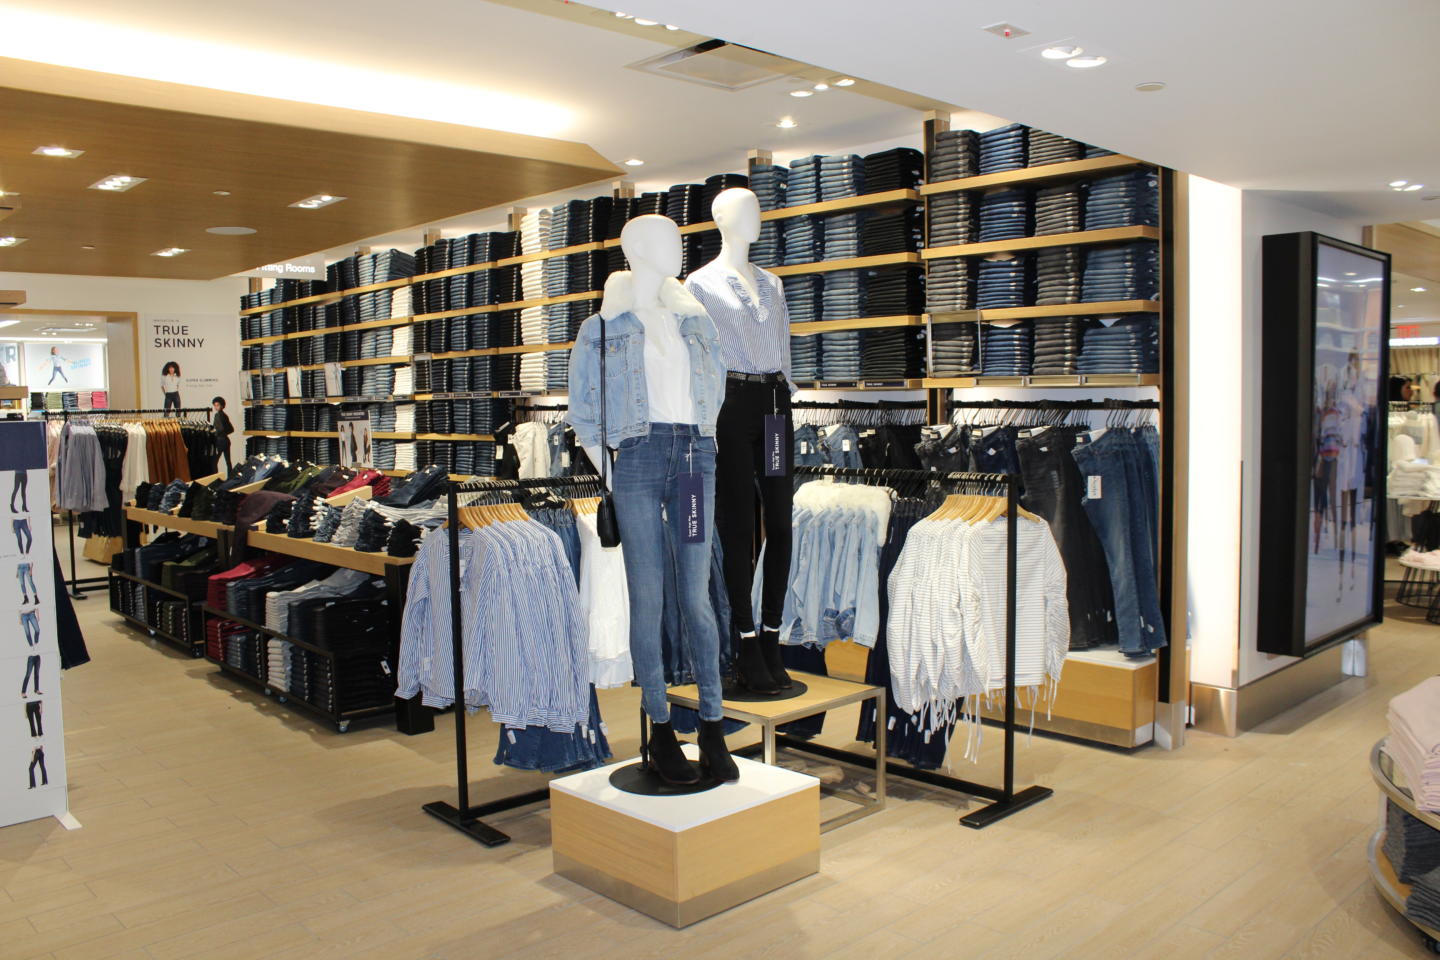 Retail display racks and perimeter jeans display by Morgan Li 